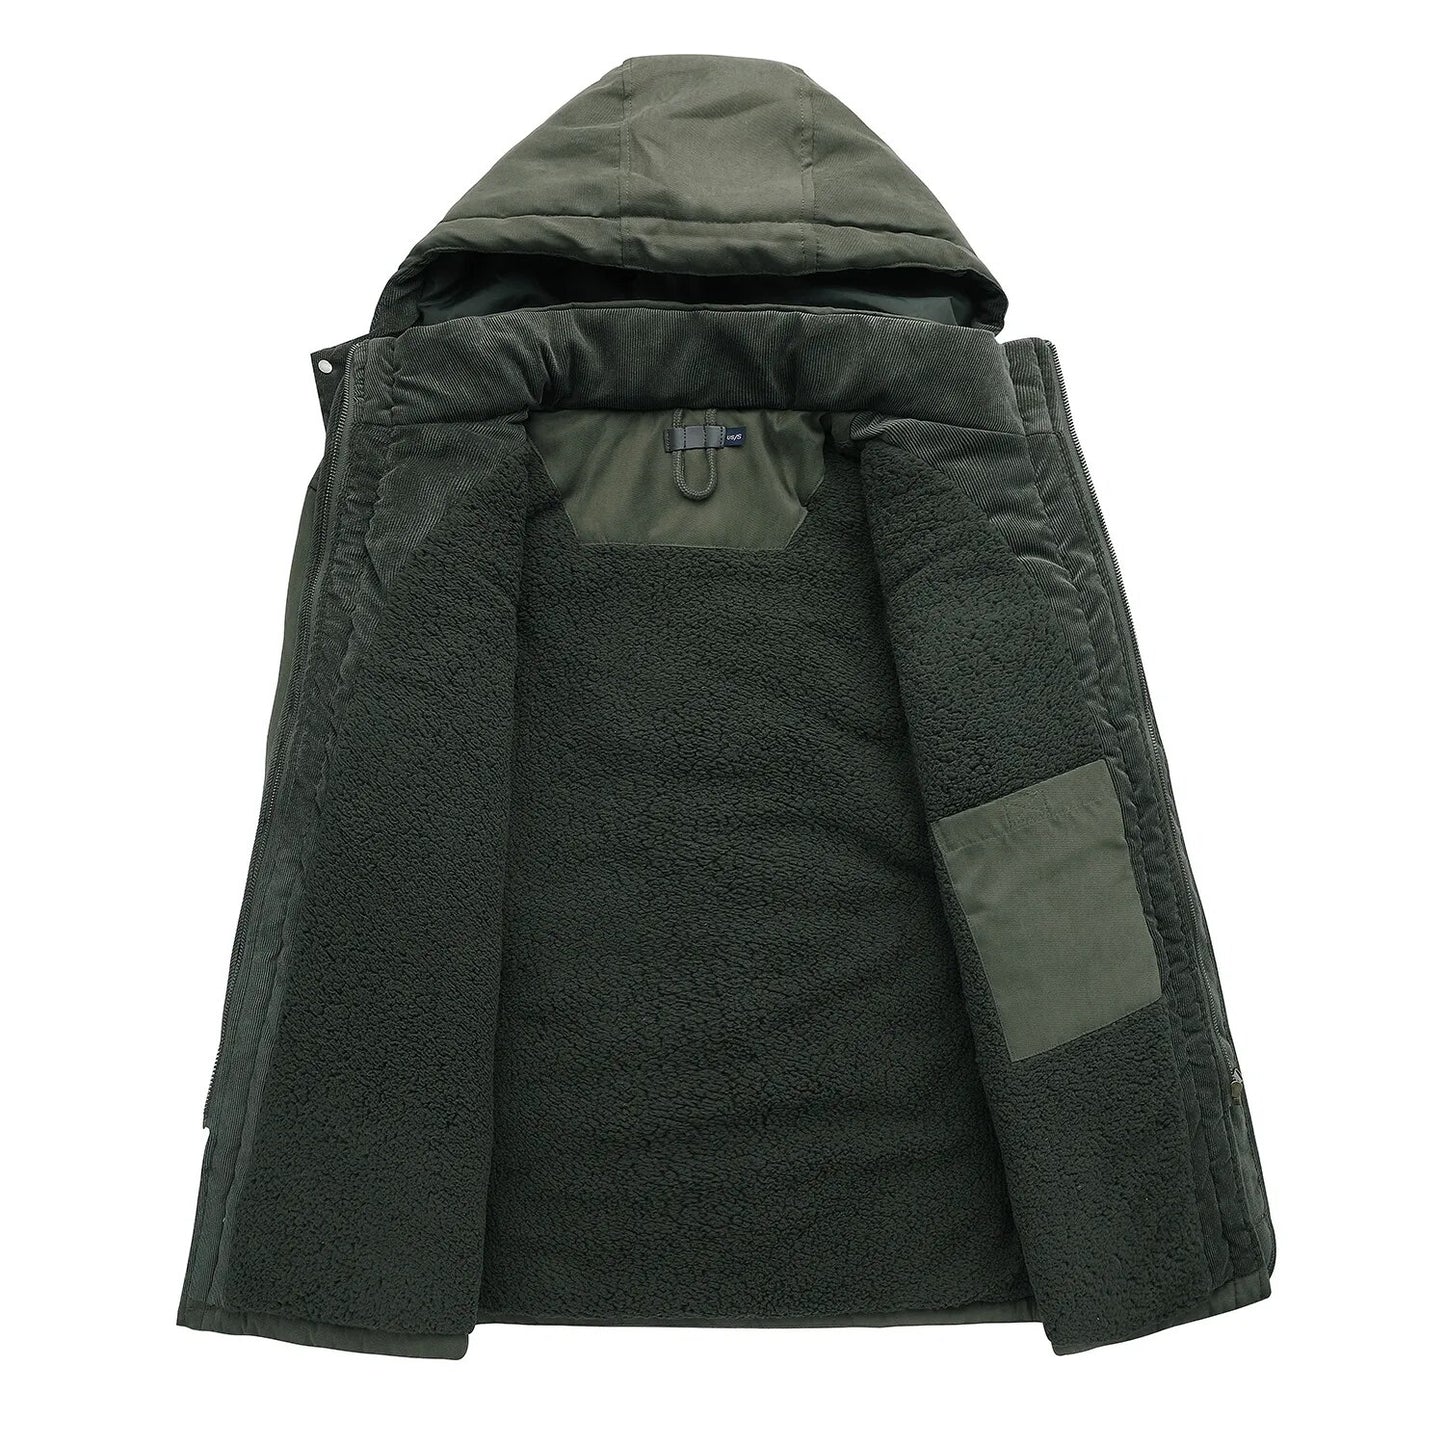 Winter Thick Jacket Men Outdoor Parka Coat Fur Linner Warm Cargo Jackets Male Windbreaker Outwear Parkas Military Army Overcoats